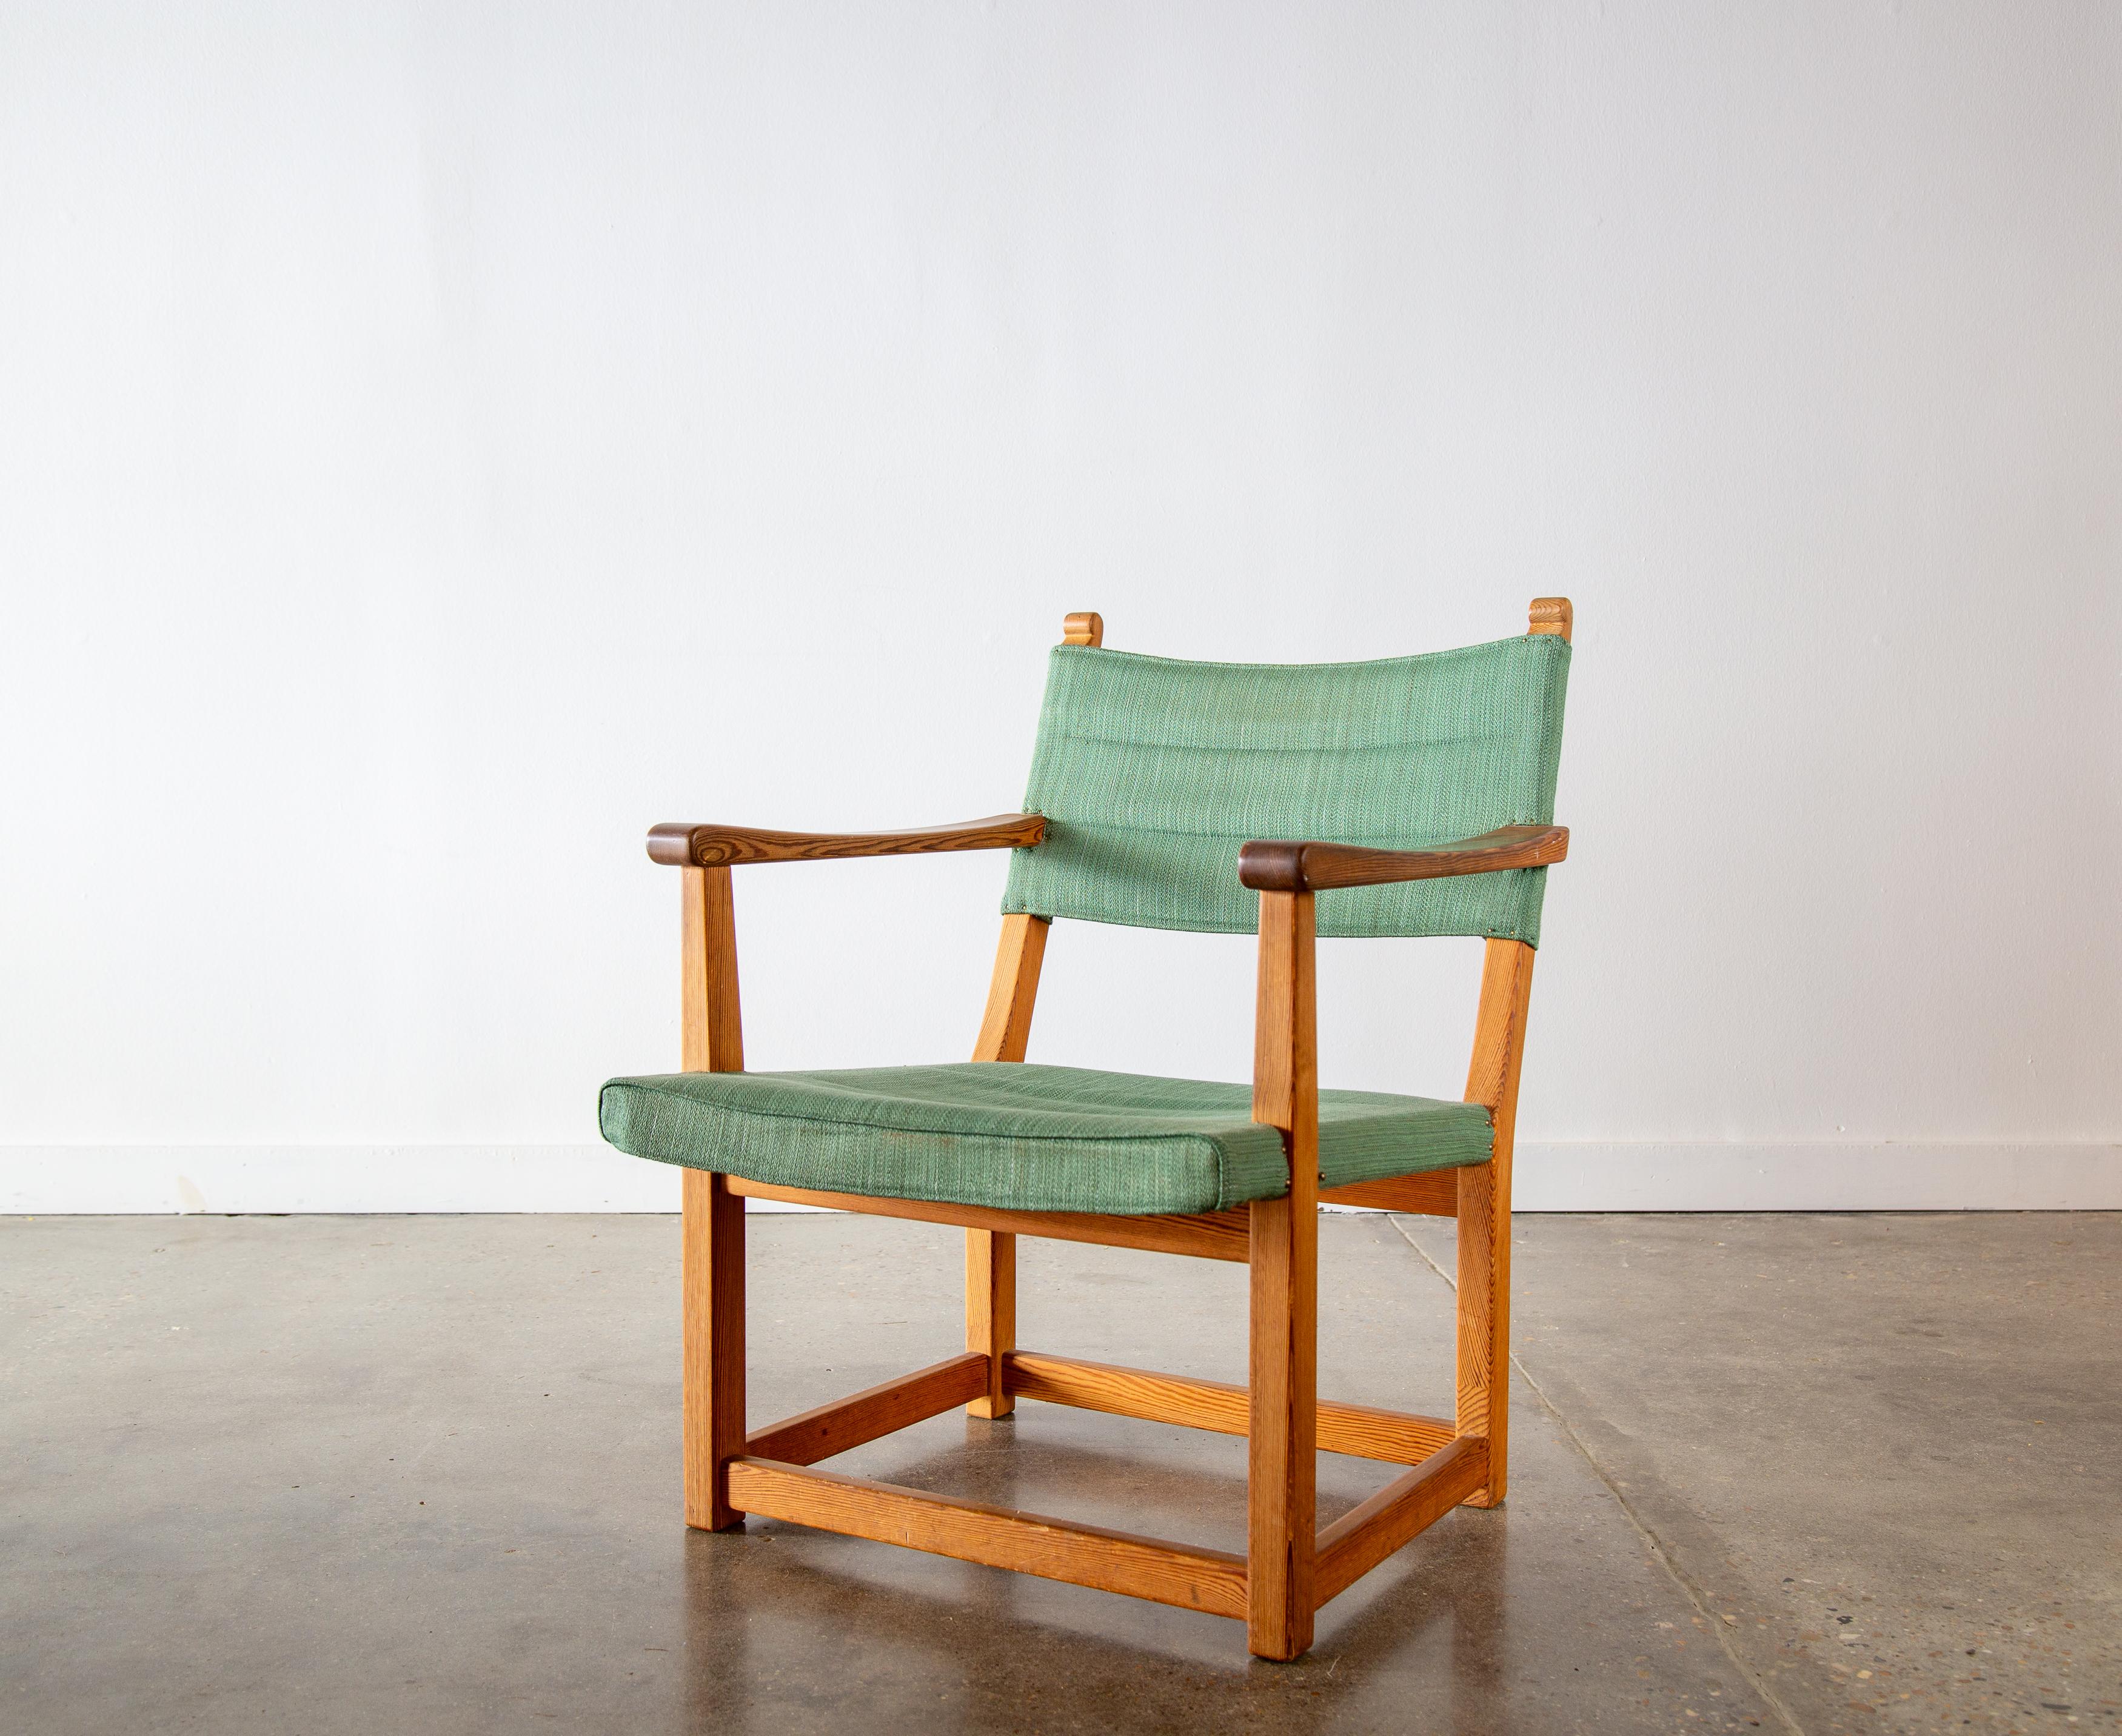 Une chaise extrêmement rare conçue par Carl Malmsten.  Le fauteuil 